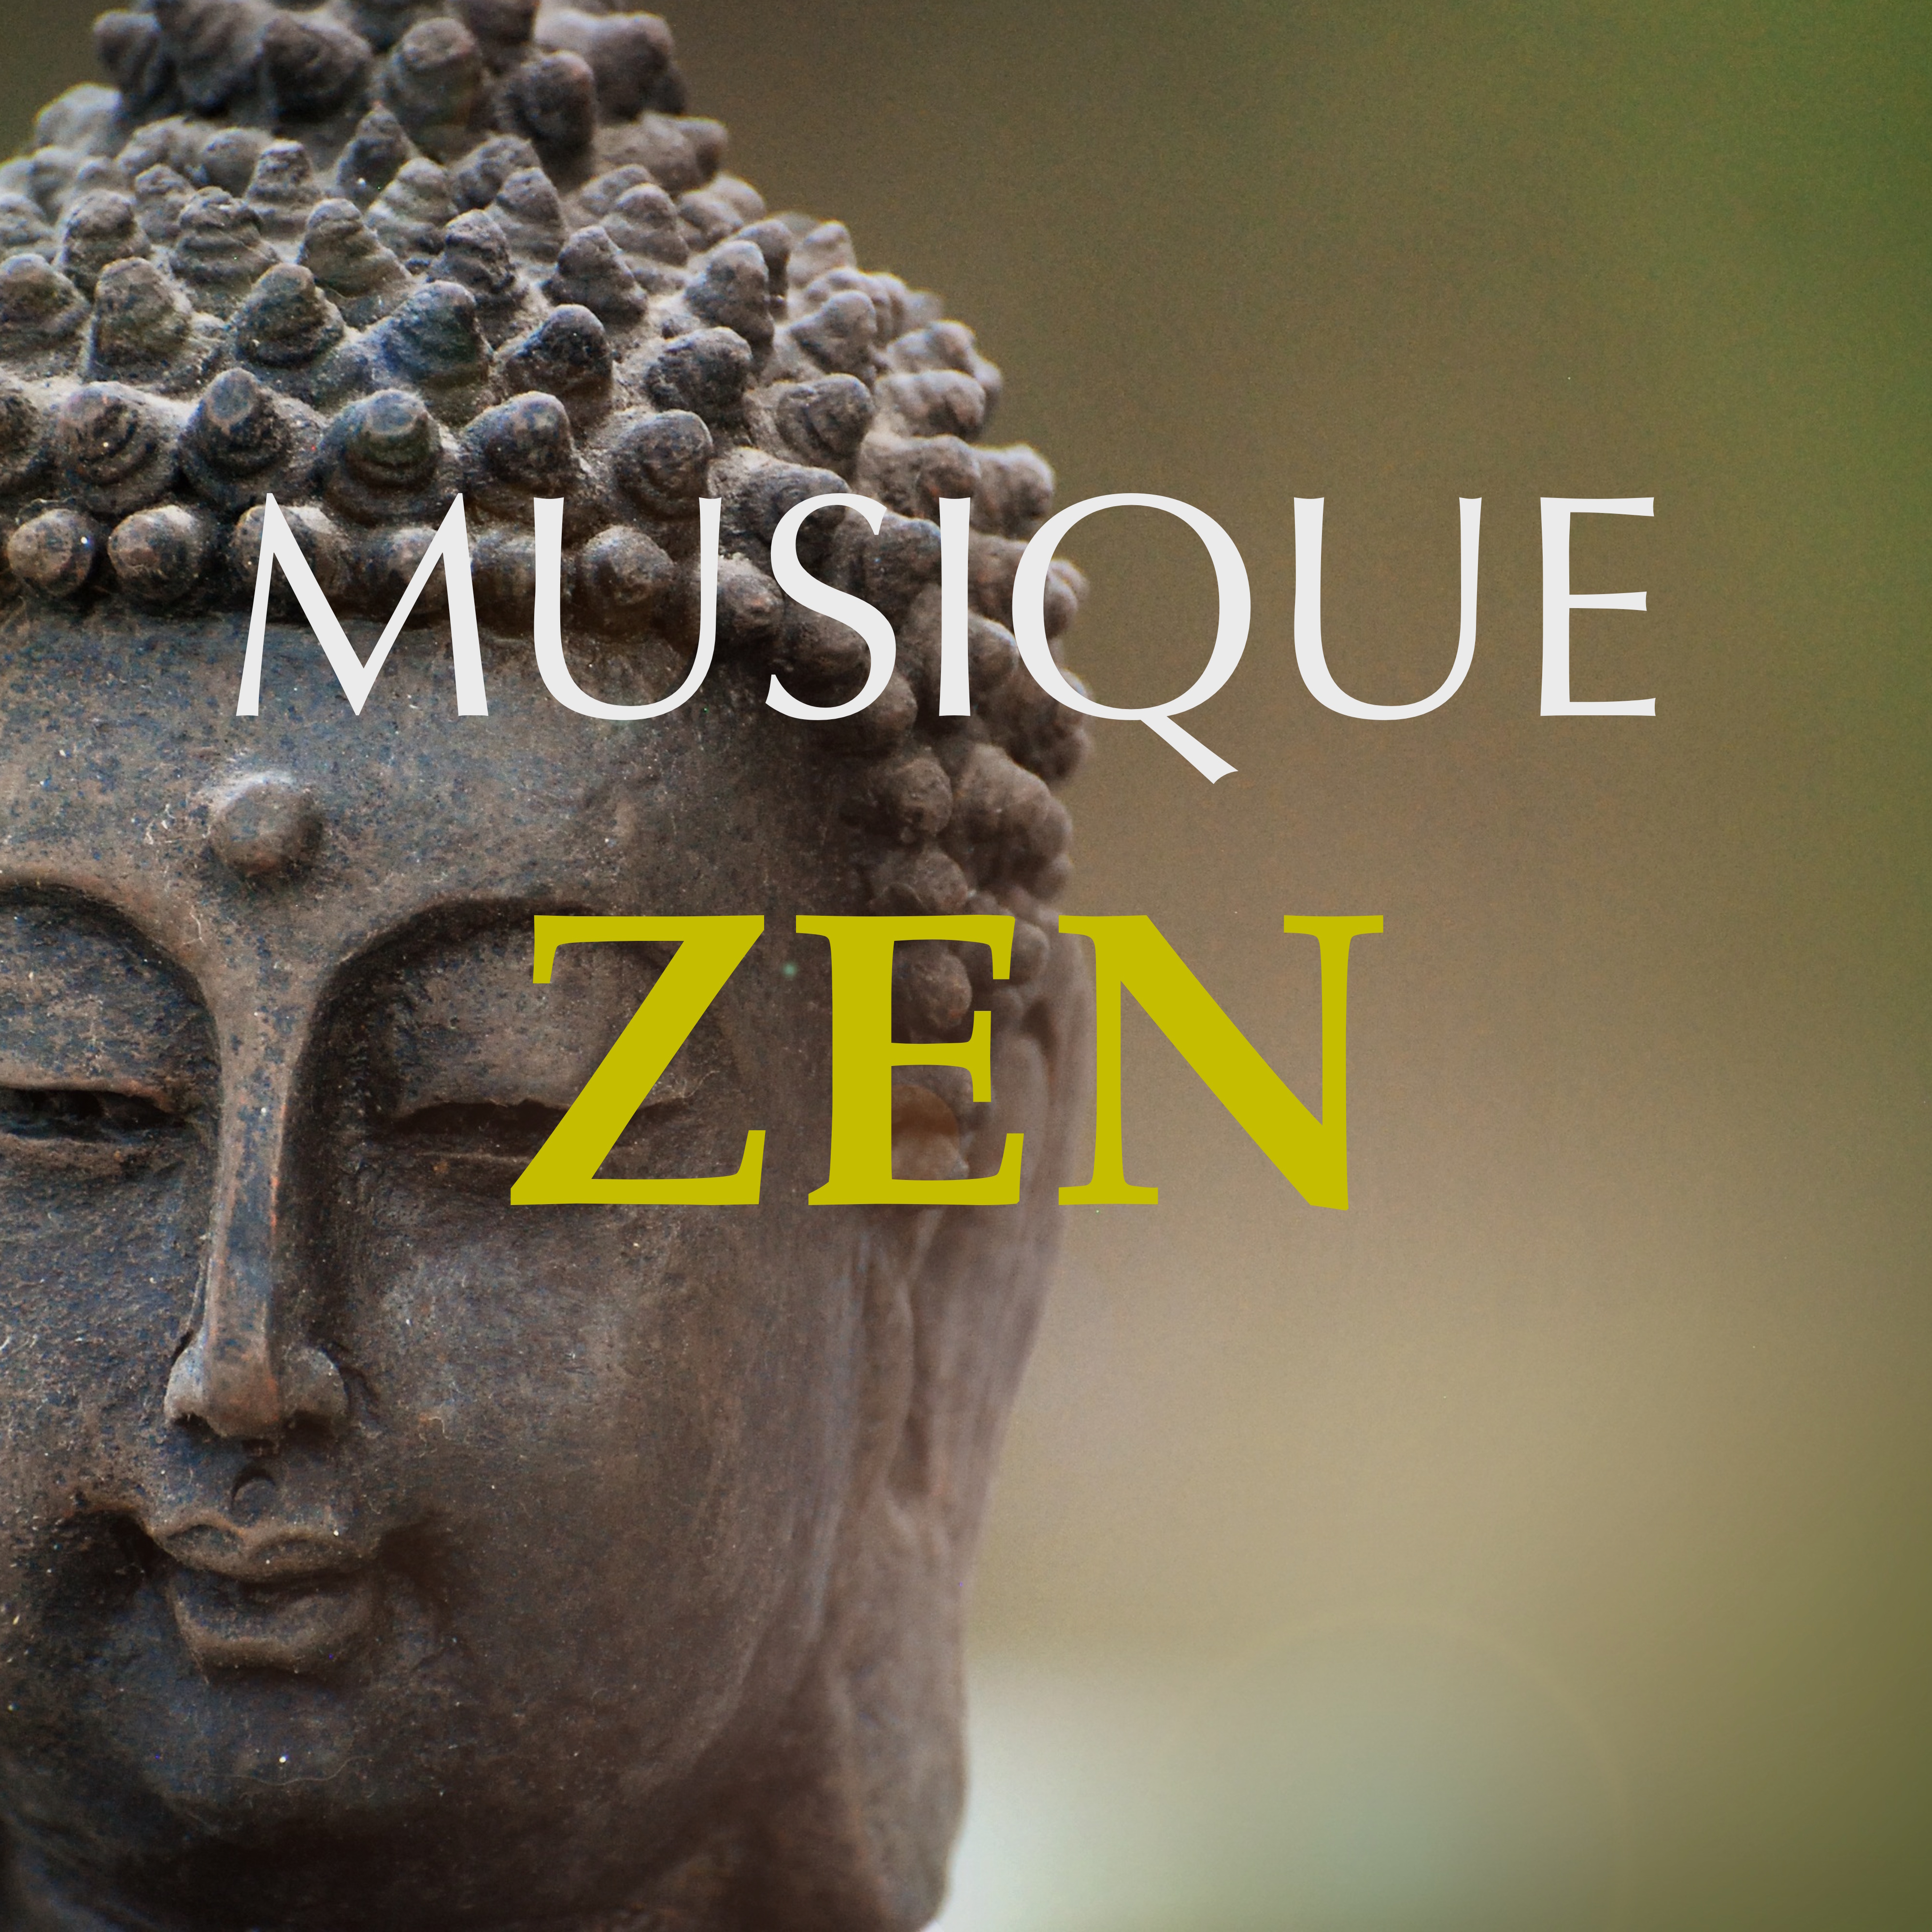 Musique Zen  Me ditation Transcendantale: New Age pour Yoga, Me ditation Profond et Se De tendre